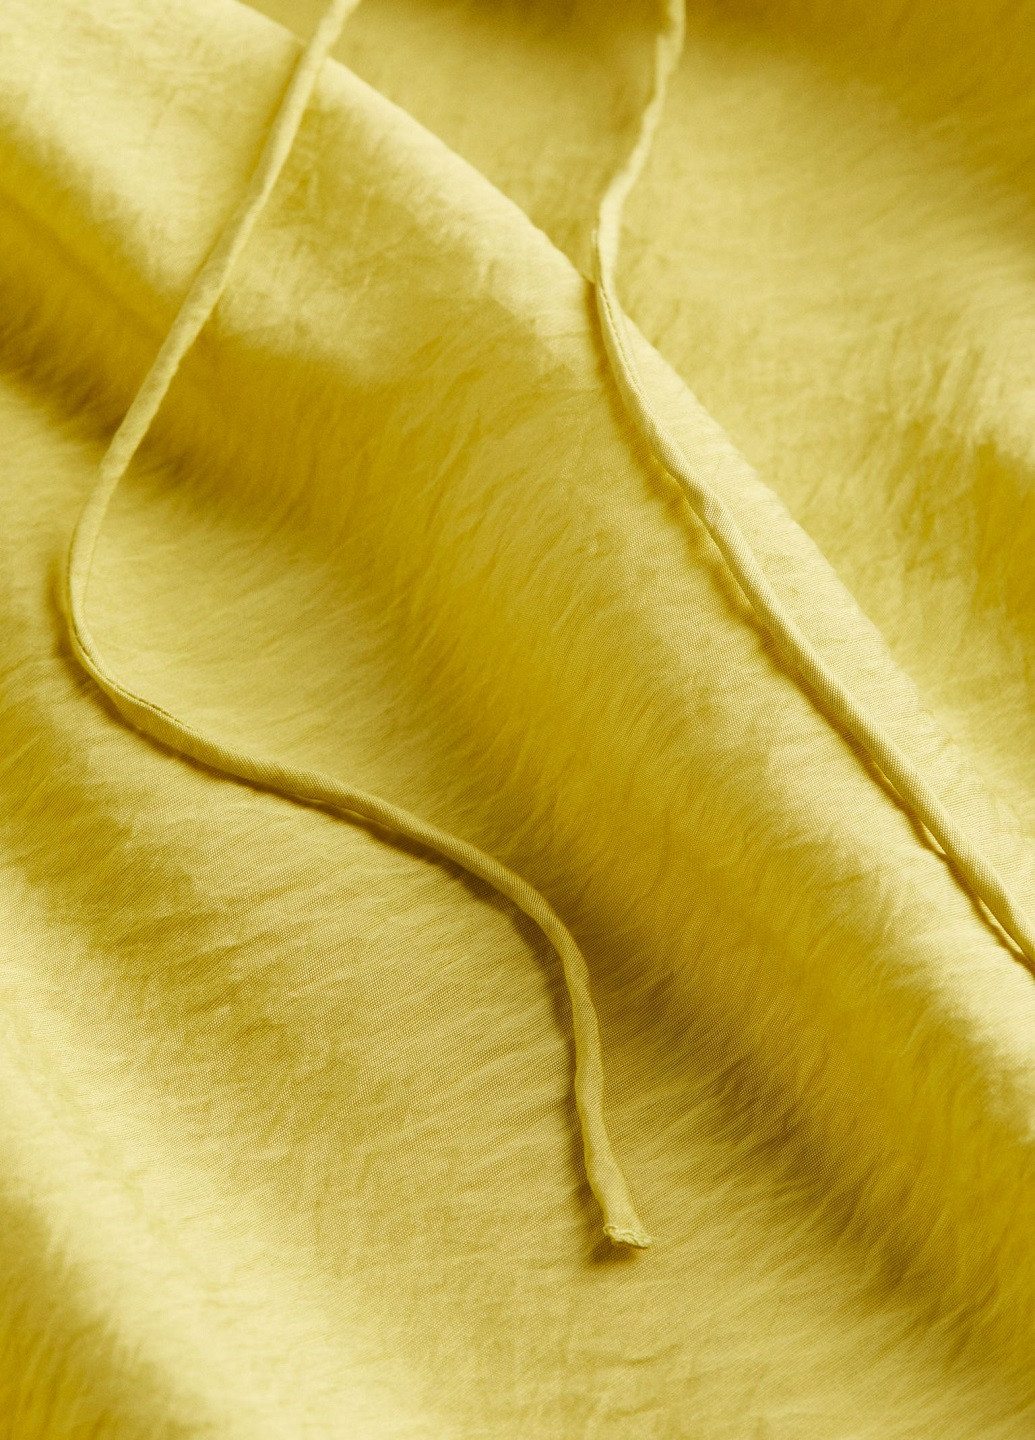 Желтое деловое платье H&M однотонное